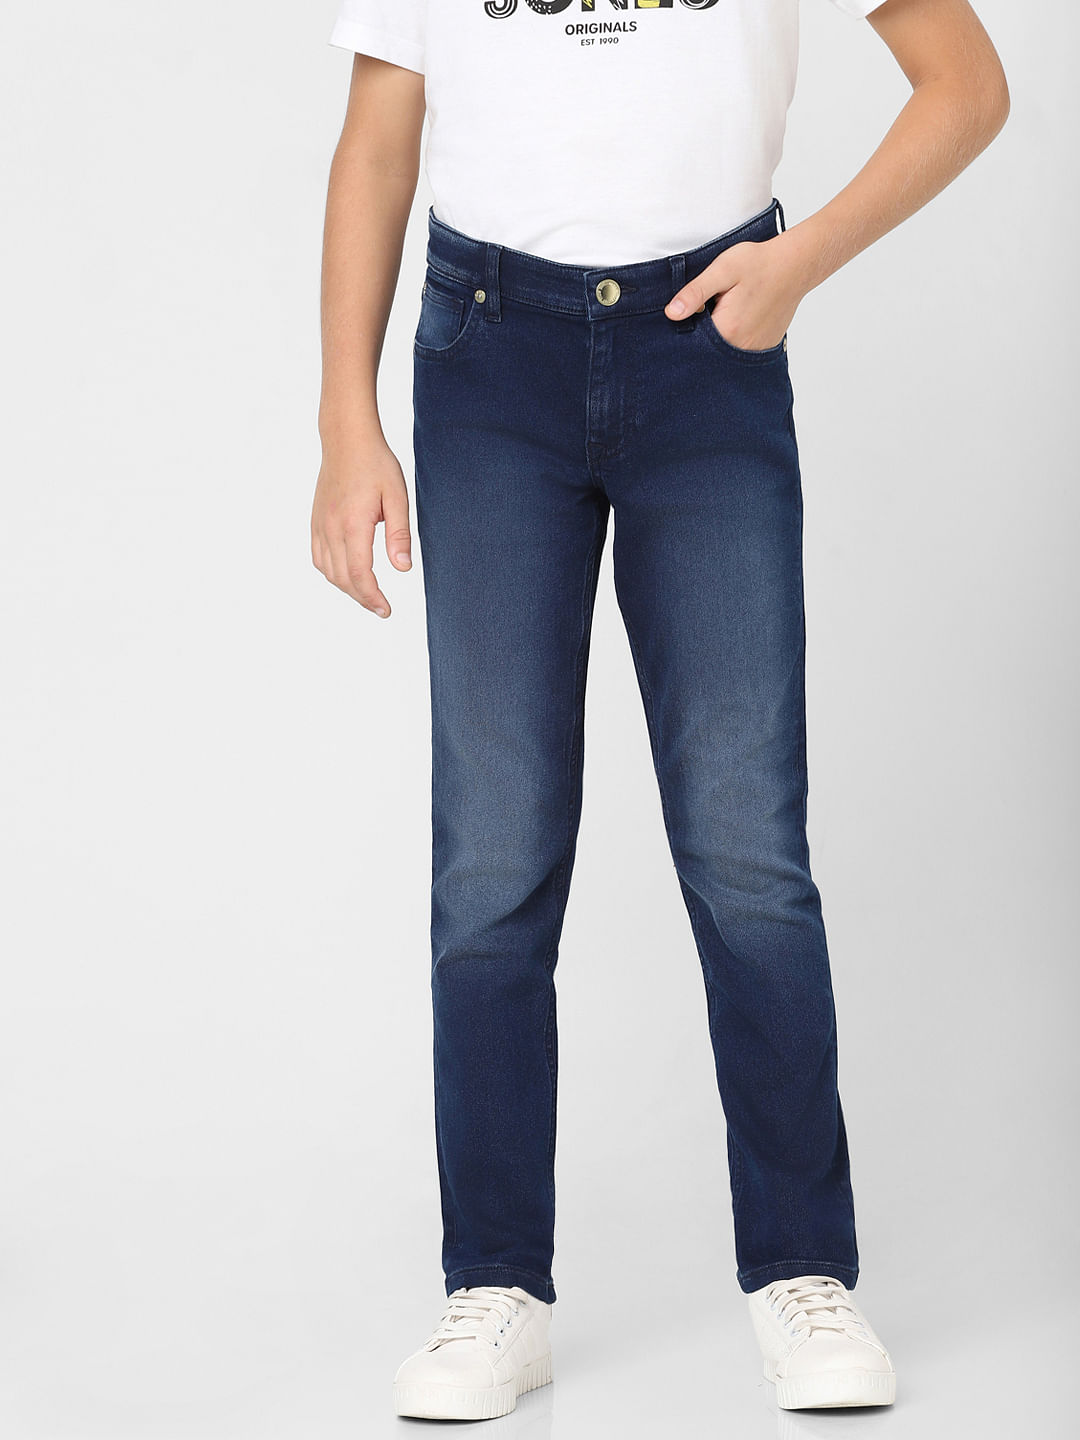 Buy Dark Blue Jeans for Men by ECKO UNLTD Online | Ajio.com